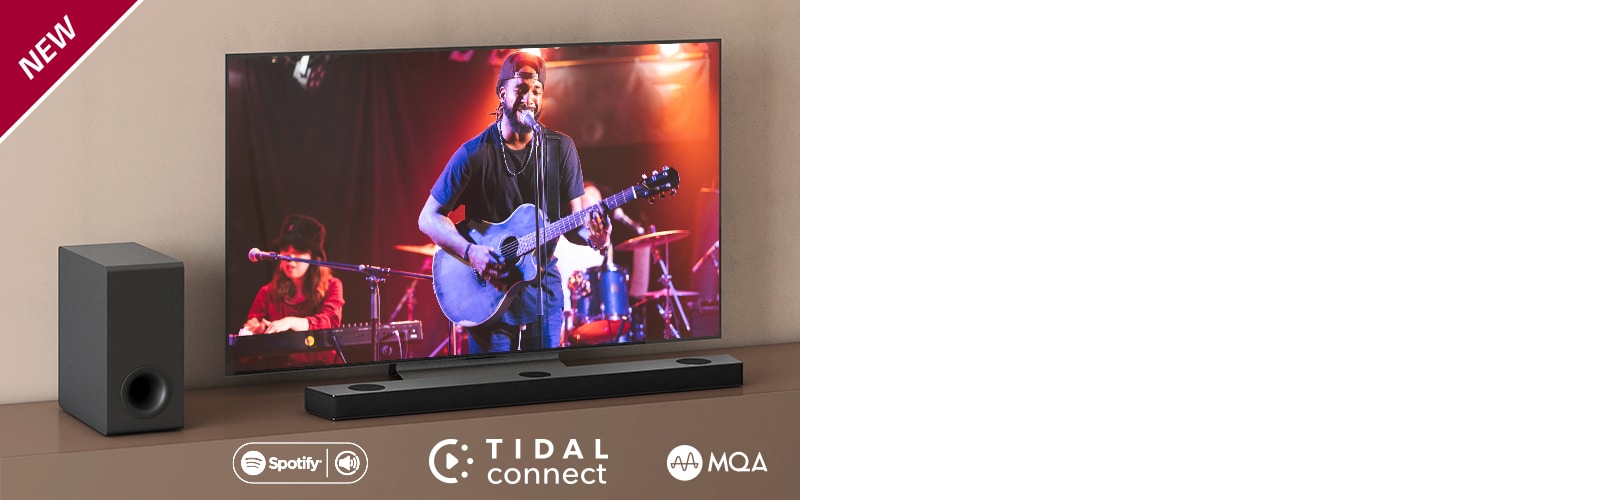 تلویزیون ال جی در قفسه قهوه ای رنگ قرار گرفته است و LG Sound Bar S95QR در جلوی تلویزیون مشاهده می شود. ساب ووفر در سمت چپ تلویزیون قرار دارد. تلویزیون صحنه ای از کنسرت را نشان می دهد. علامت «جدید» (NEW) در گوشه بالا و سمت چپ نشان داده شده است.